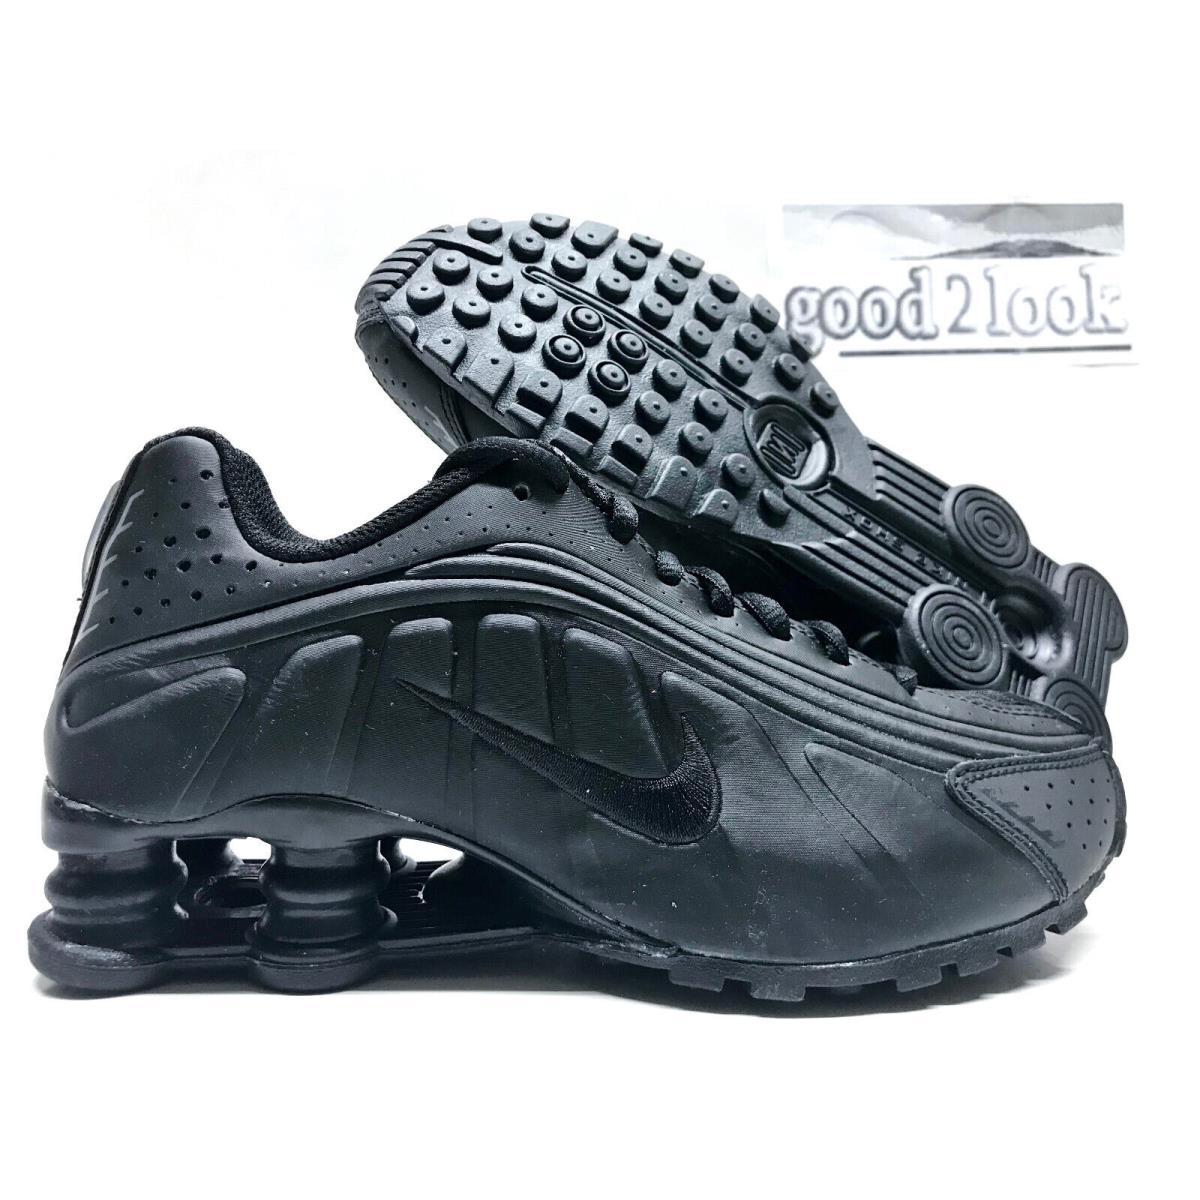 Nike Shox R4 GS Black/black-white Size 4Y/WOMEN`S 5.5 BQ4000-001